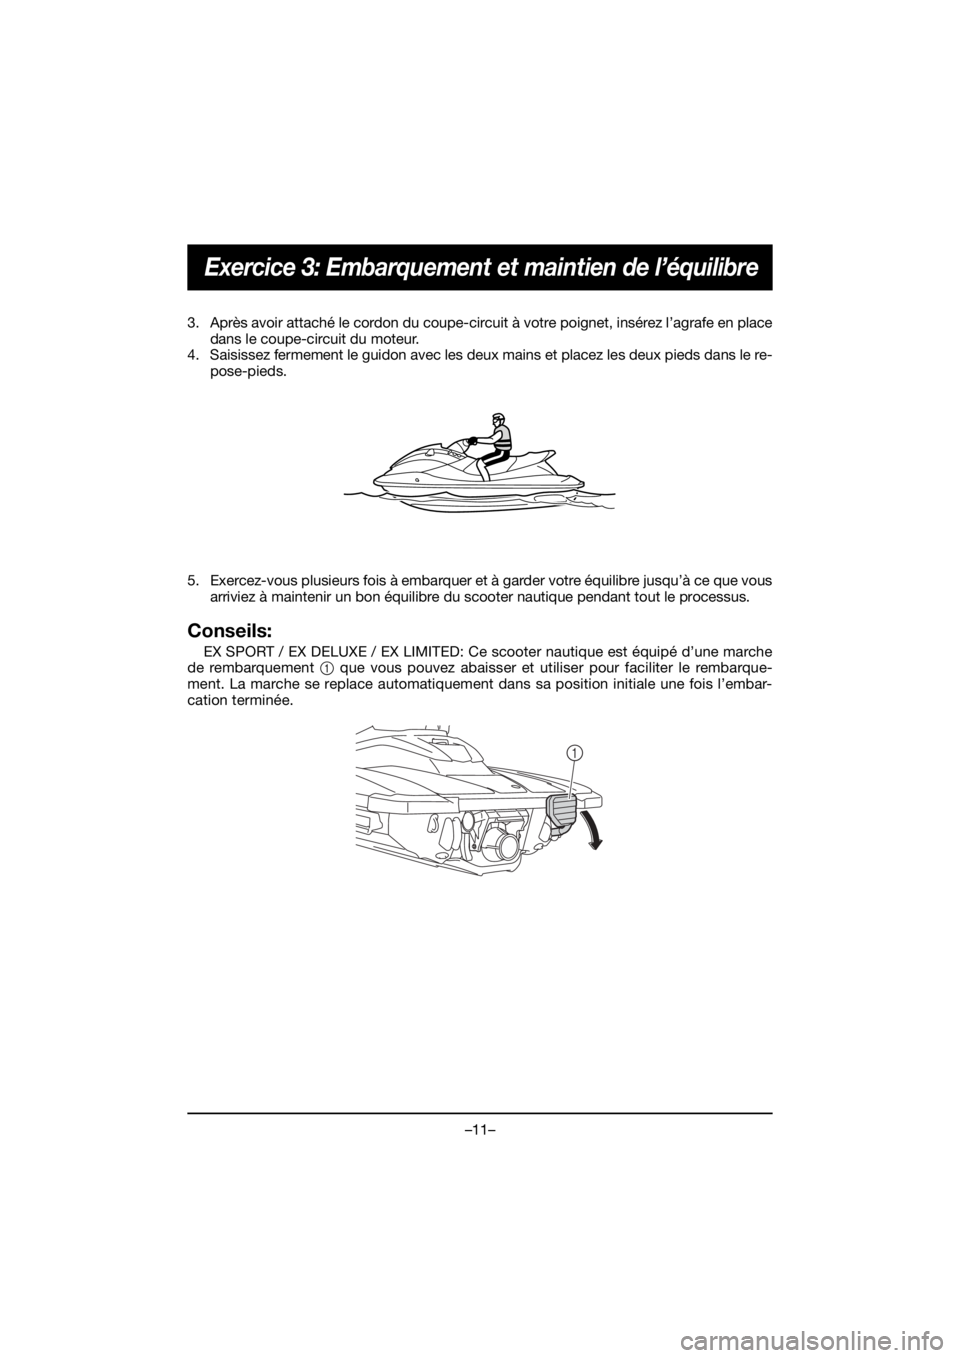 YAMAHA EX 2021  Manuale de Empleo (in Spanish) –11–
Exercice 3: Embarquement et maintien de l’équilibre
3. Après avoir attaché le cordon du coupe-circuit à votre poignet, insérez l’agrafe en placedans le coupe-circuit du moteur.
4. Sa